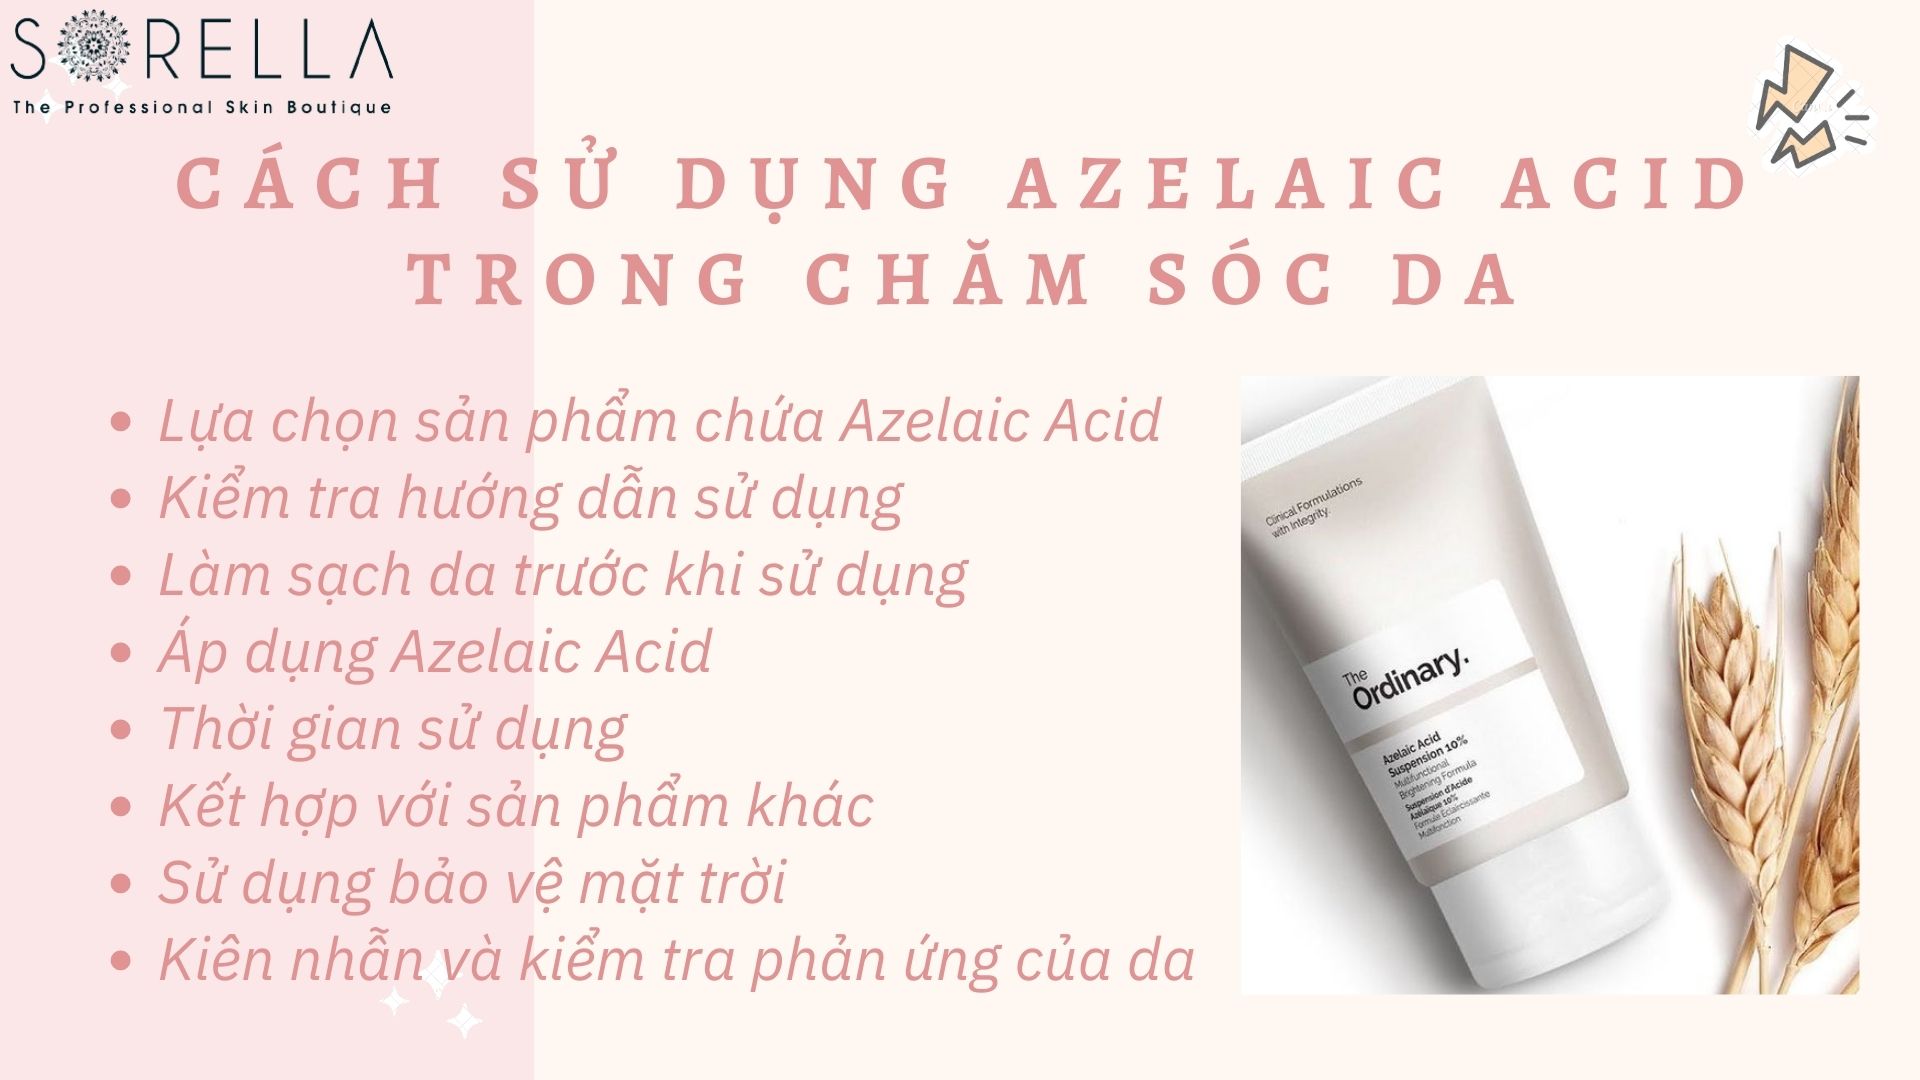 Cách sử dụng Azelaic Acid trong chăm sóc da